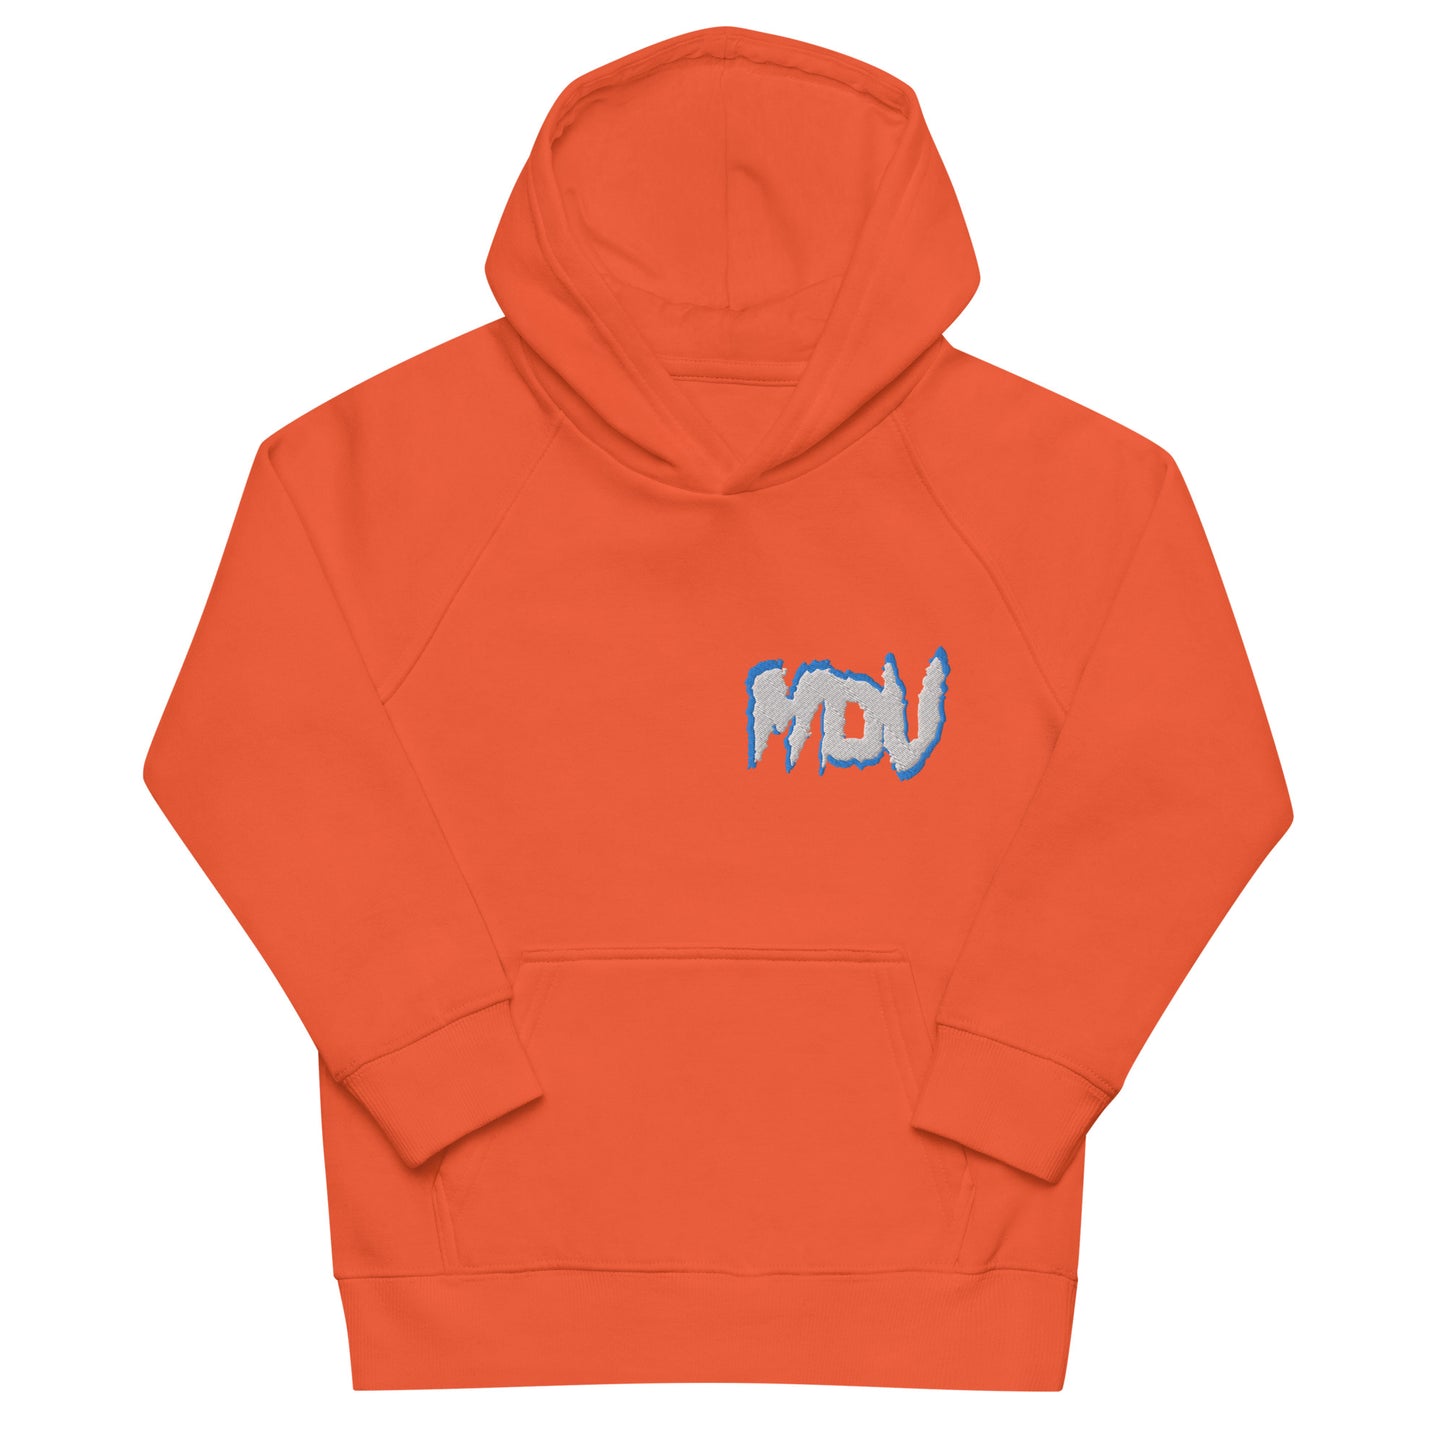 Grey MDV Kids hoodie